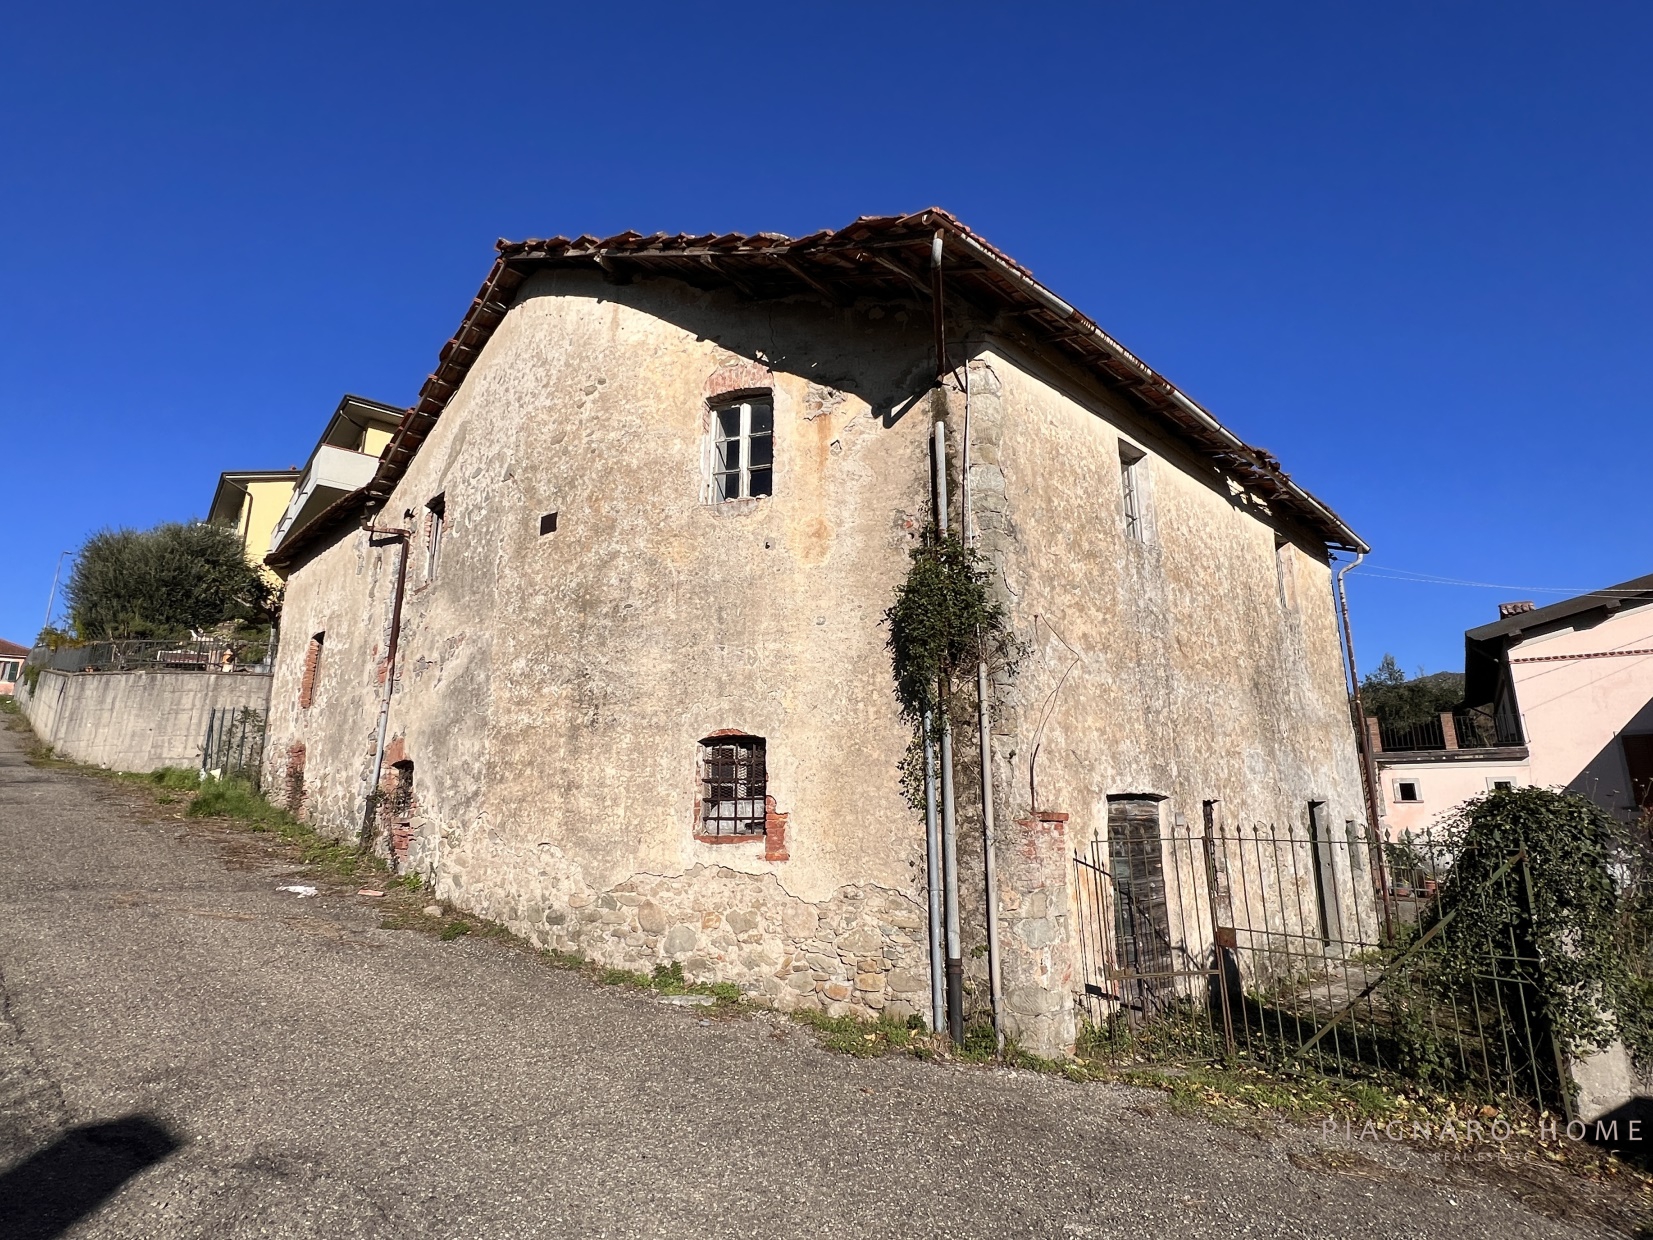 Rustico / Casale in vendita a Pontremoli, 6 locali, prezzo € 100.000 | PortaleAgenzieImmobiliari.it